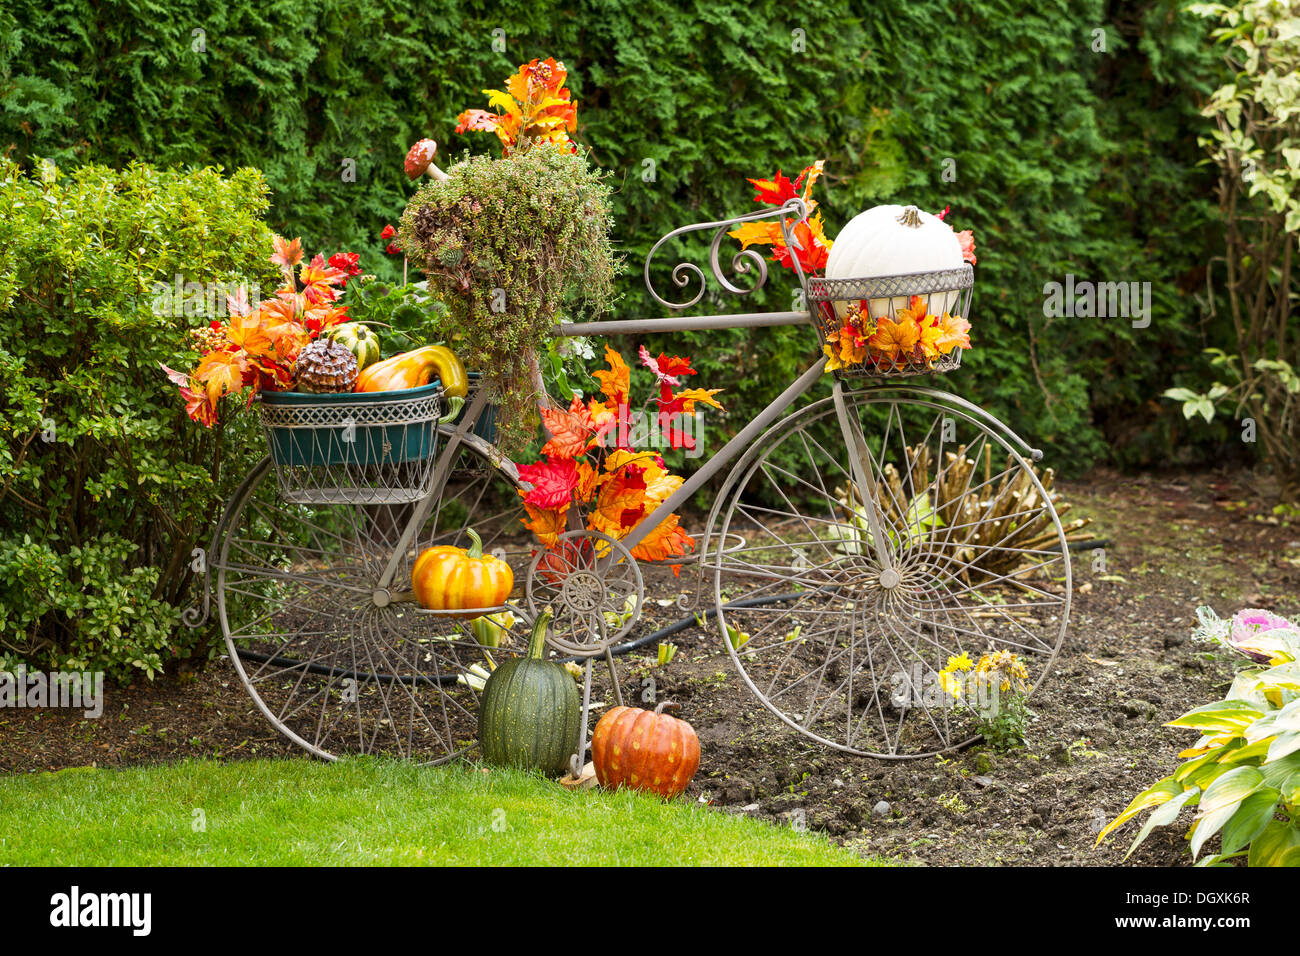 Photo horizontale de vieux vélo stationnaire rempli de feuilles, les citrouilles et autres divers objets d'automne Banque D'Images